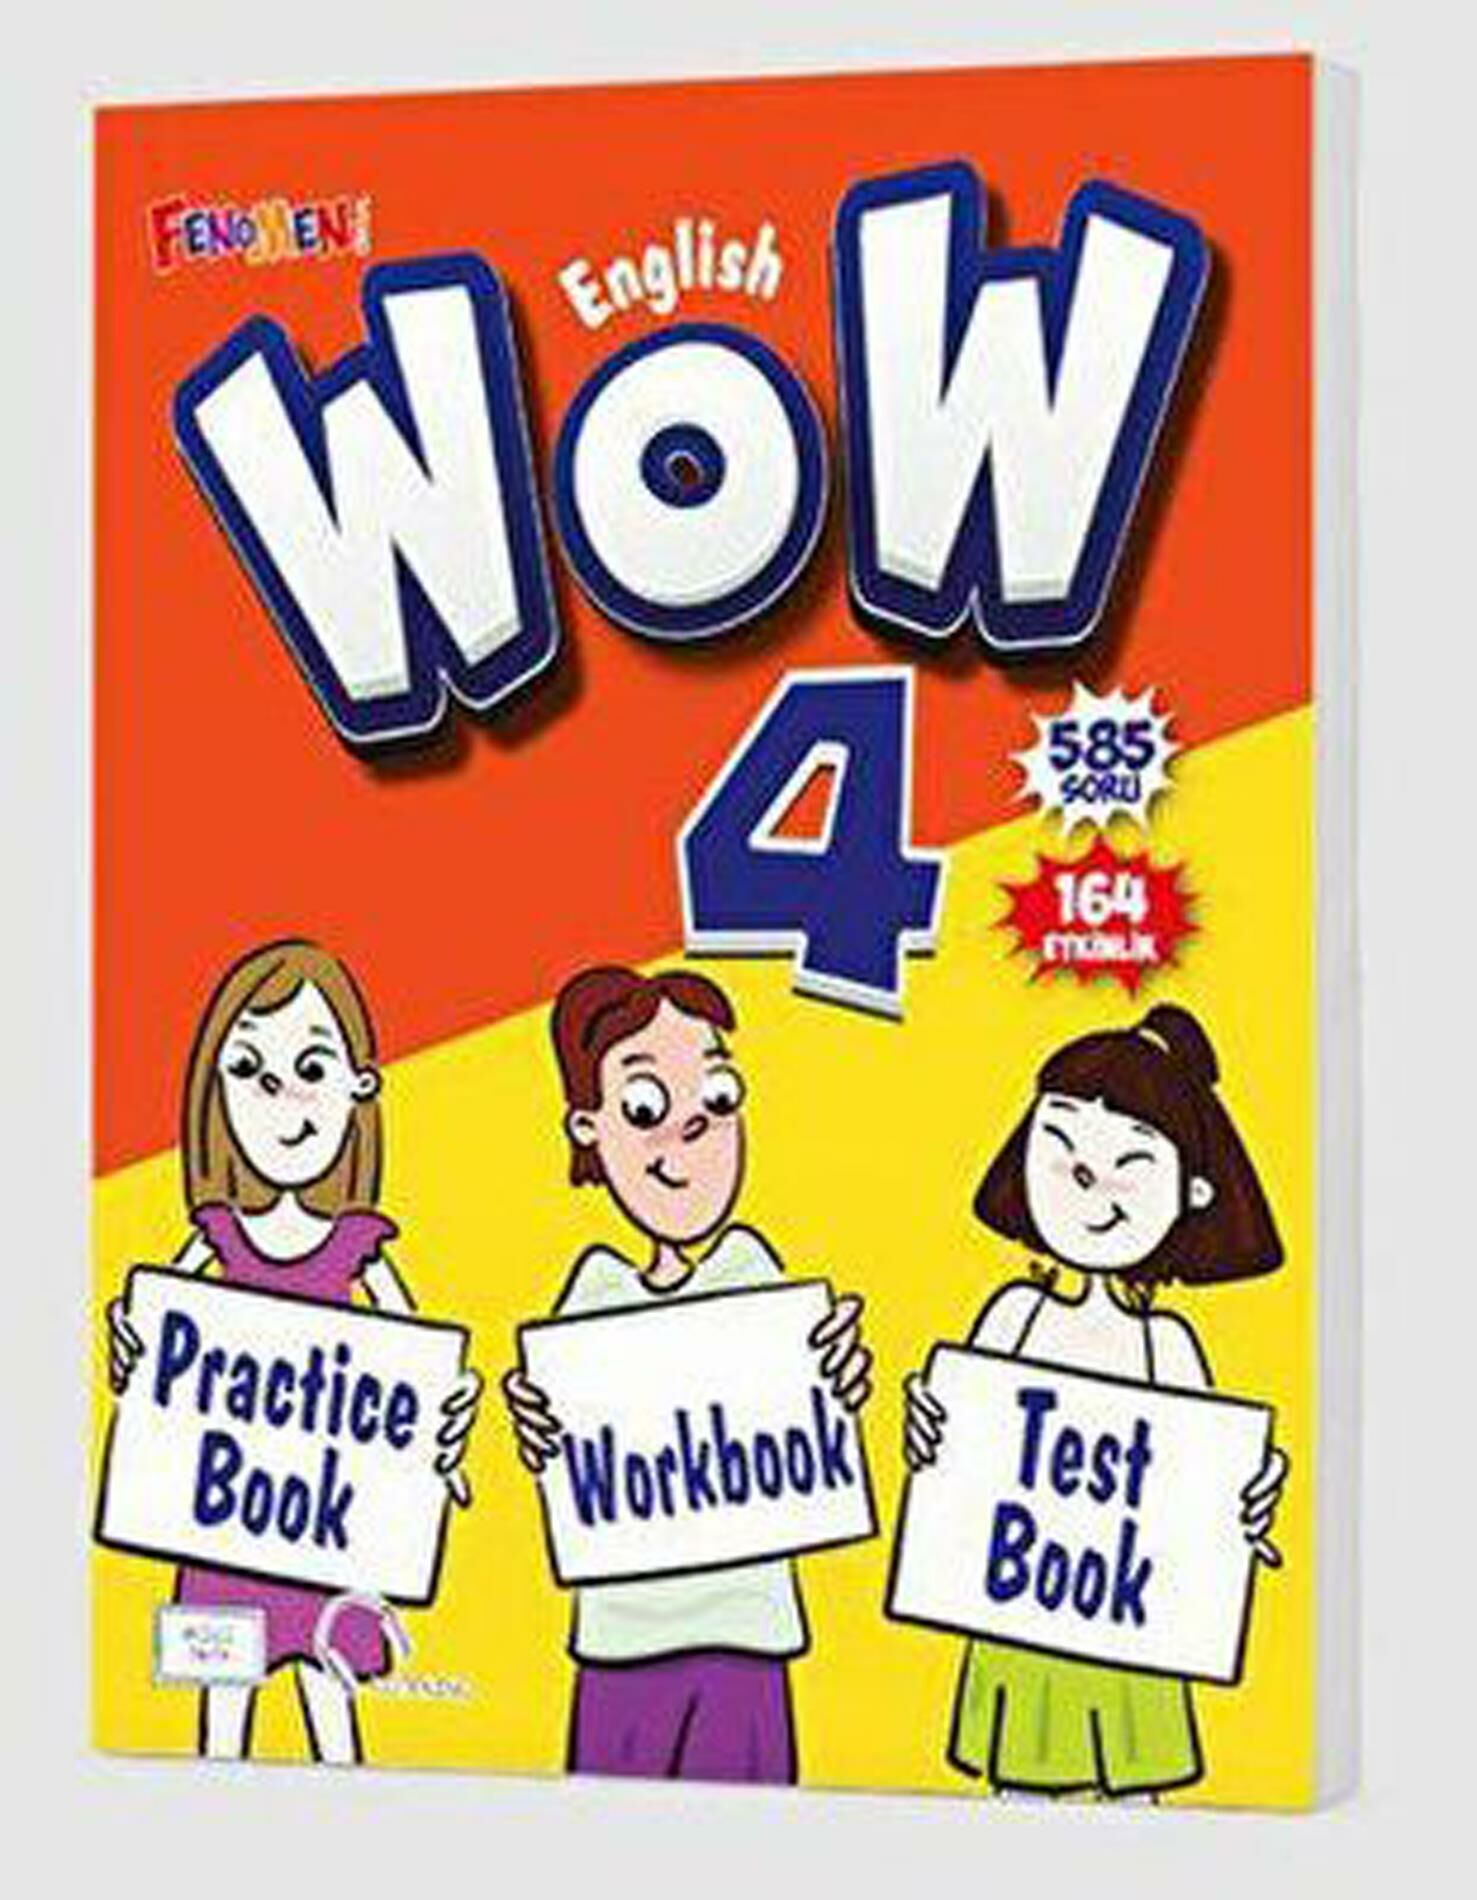 Fenomen Wow 4 English Practice Book + Workbook + Test Book